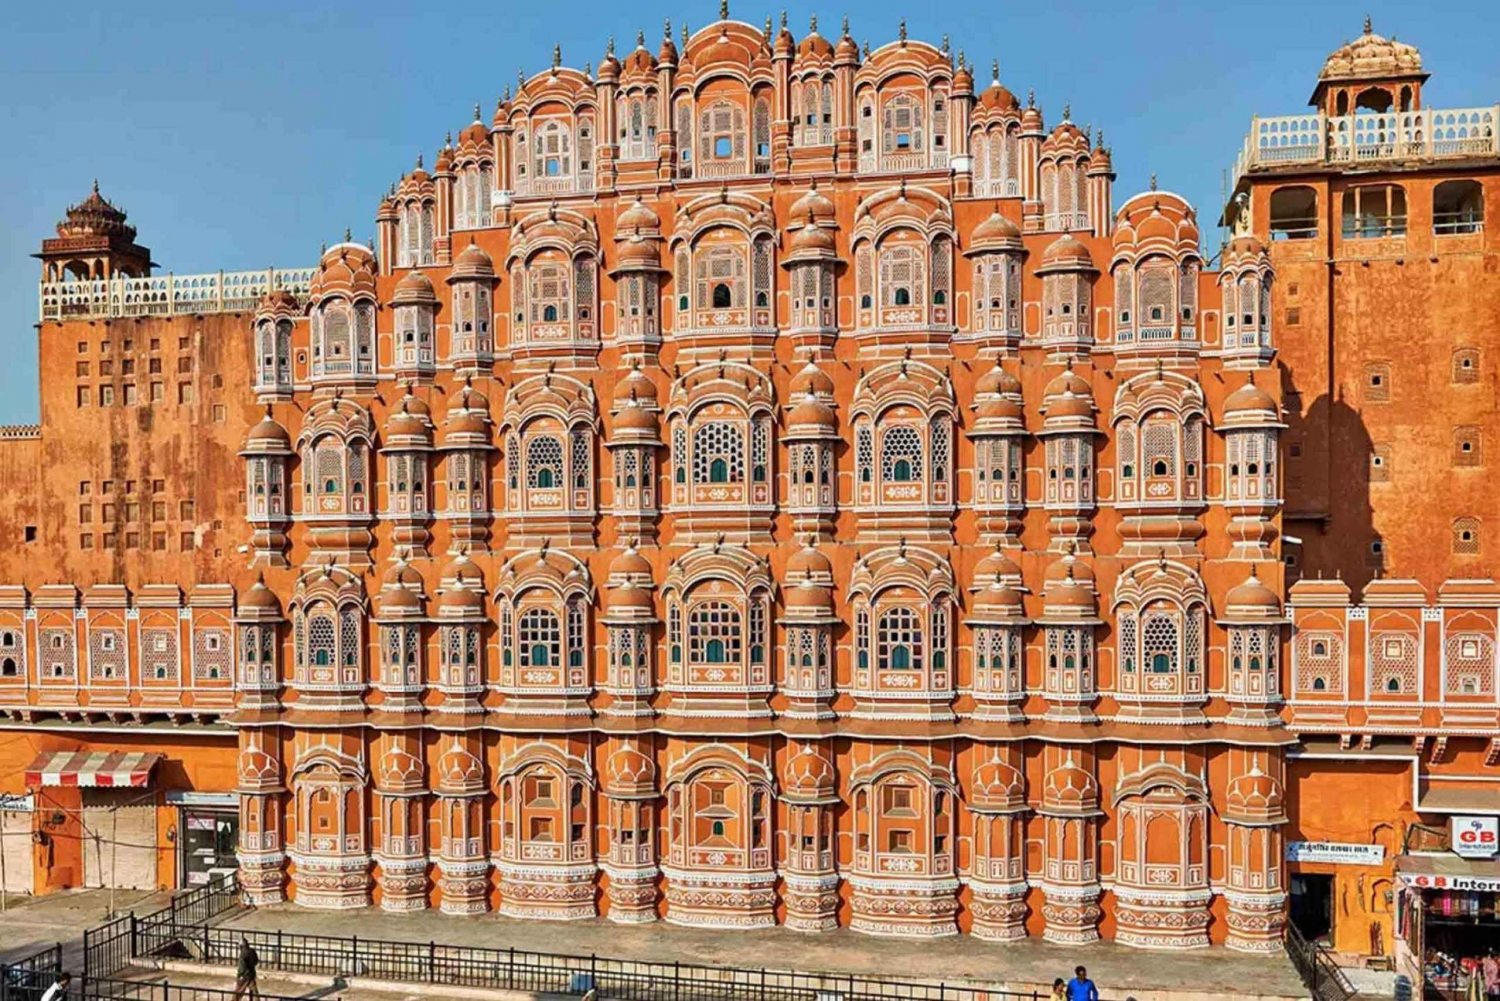 Stadsresa Jaipur med bil: Från Agra